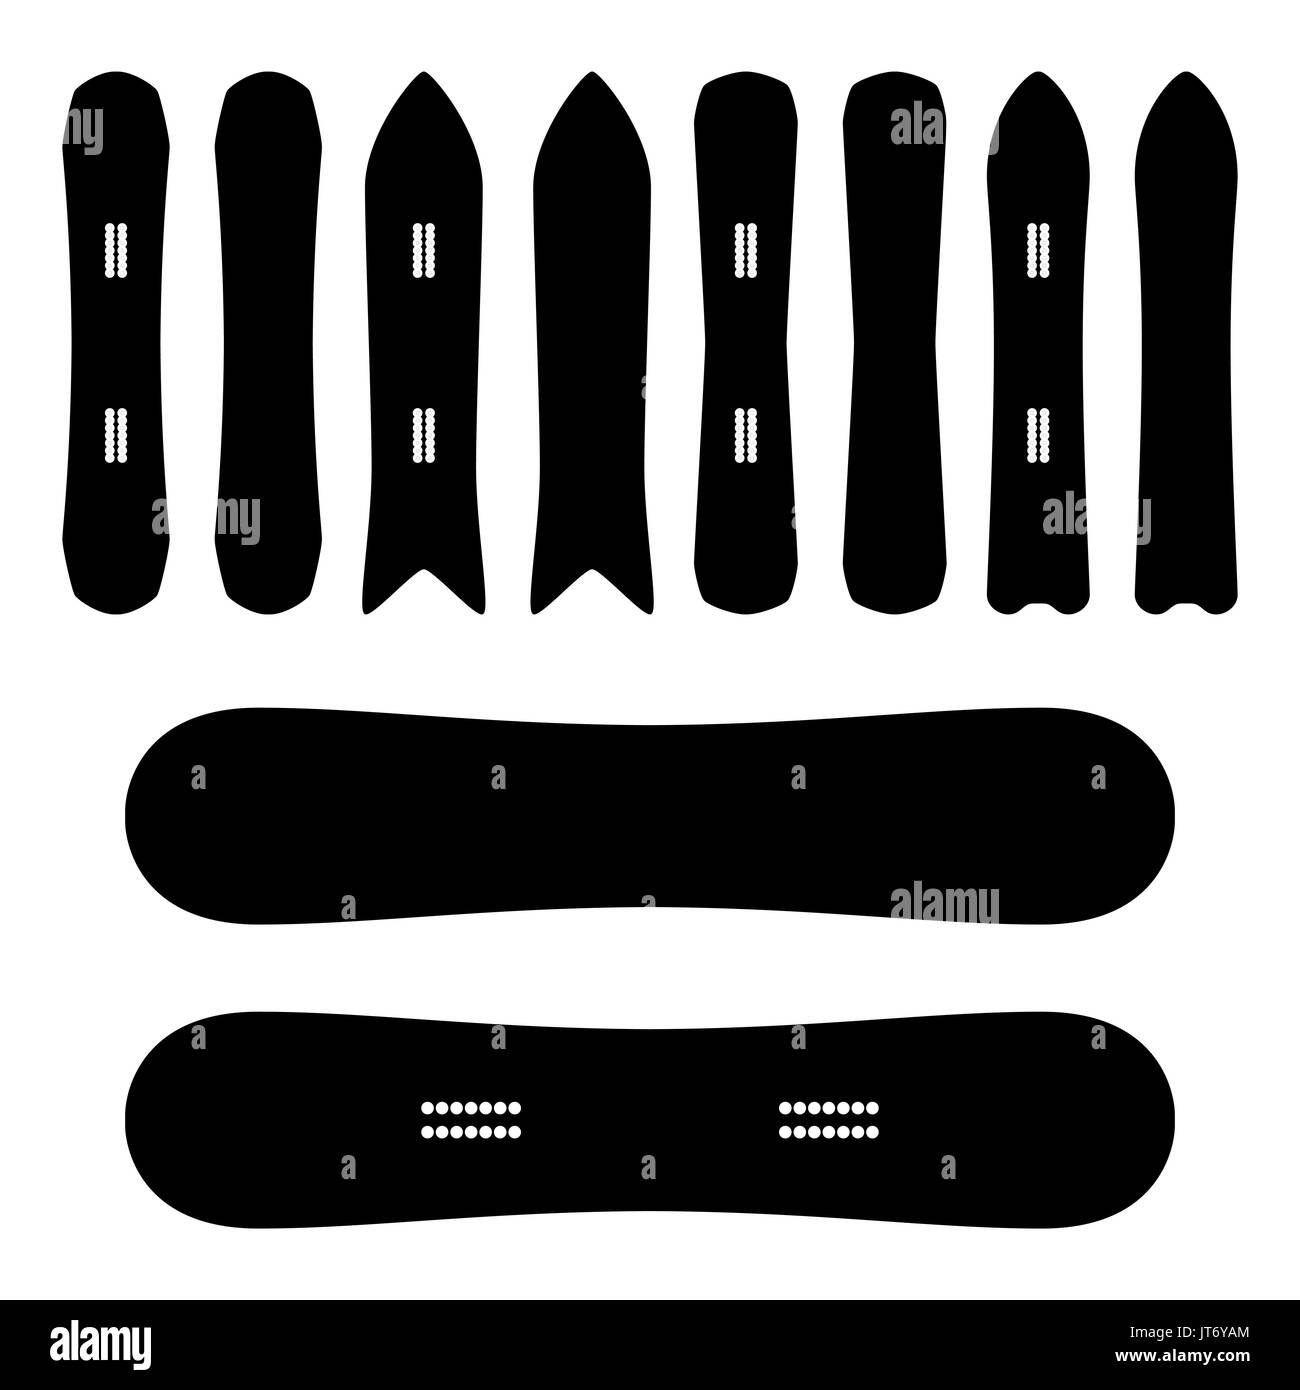 Snowboard iconos en Vector. Blanco y Negro. Diferentes tipos. Snowboard Símbolos, signo aislado. Ilustración del Vector